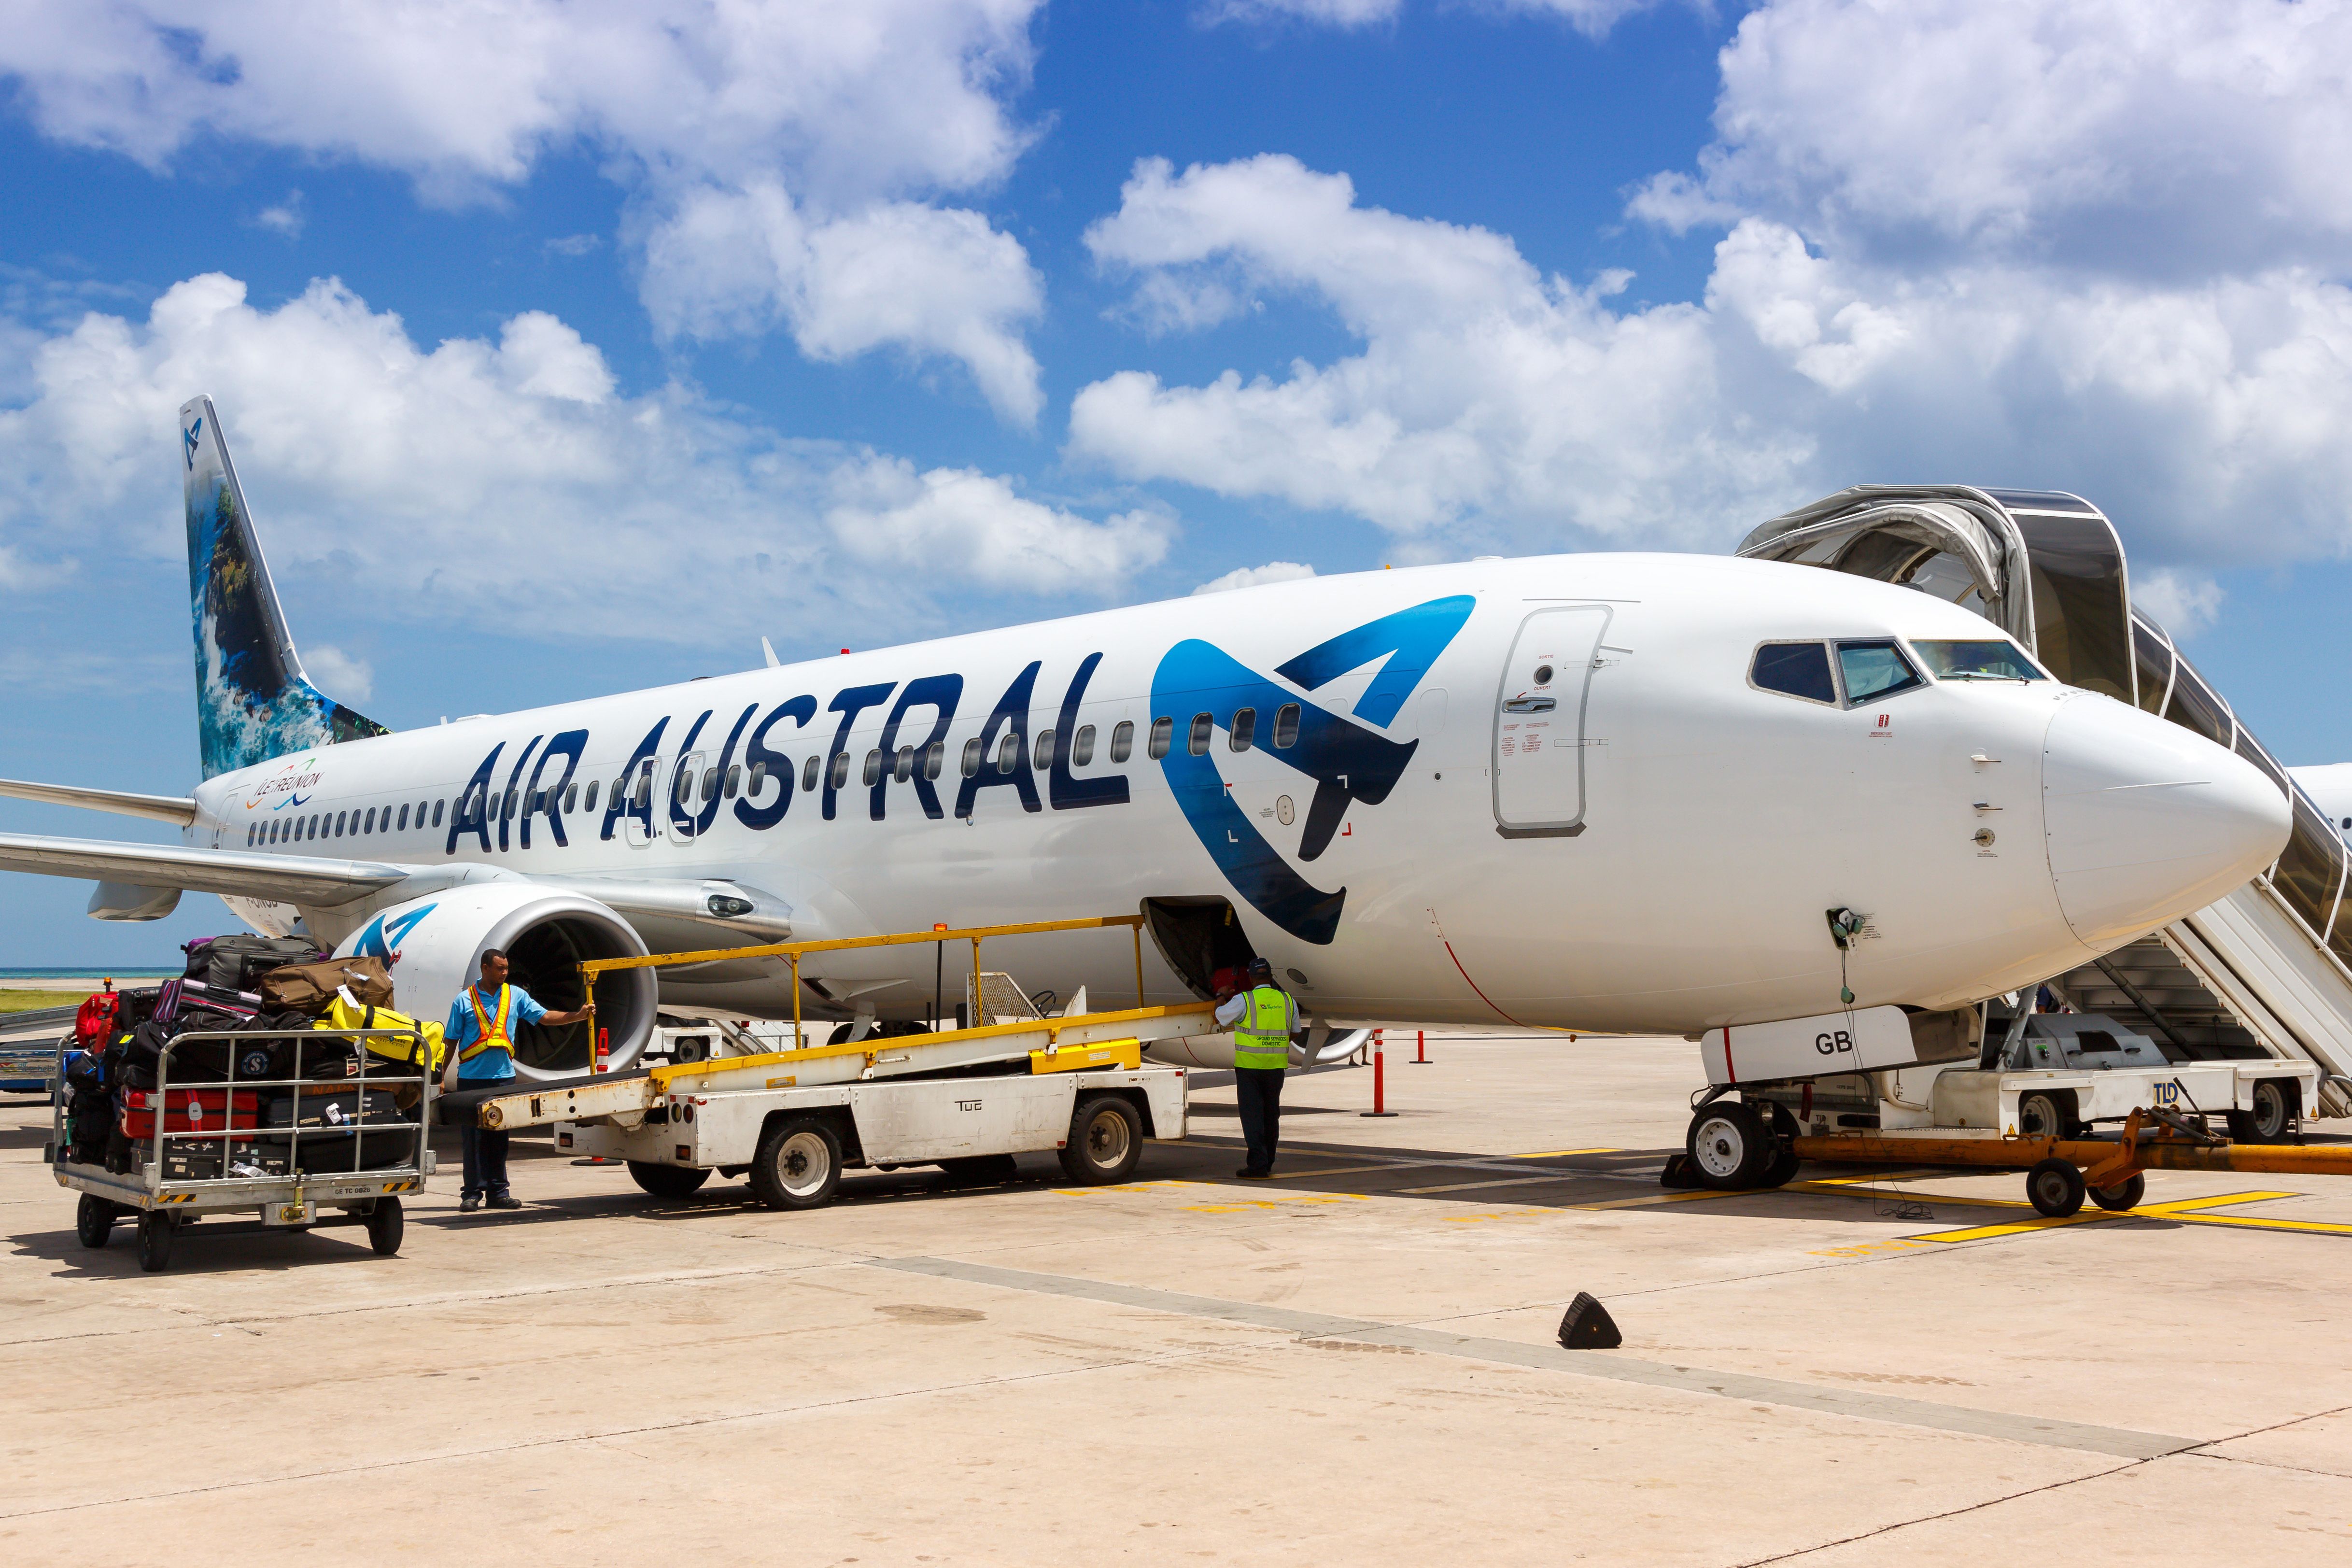 An Air Austral Boeing 737-800 at the gate.